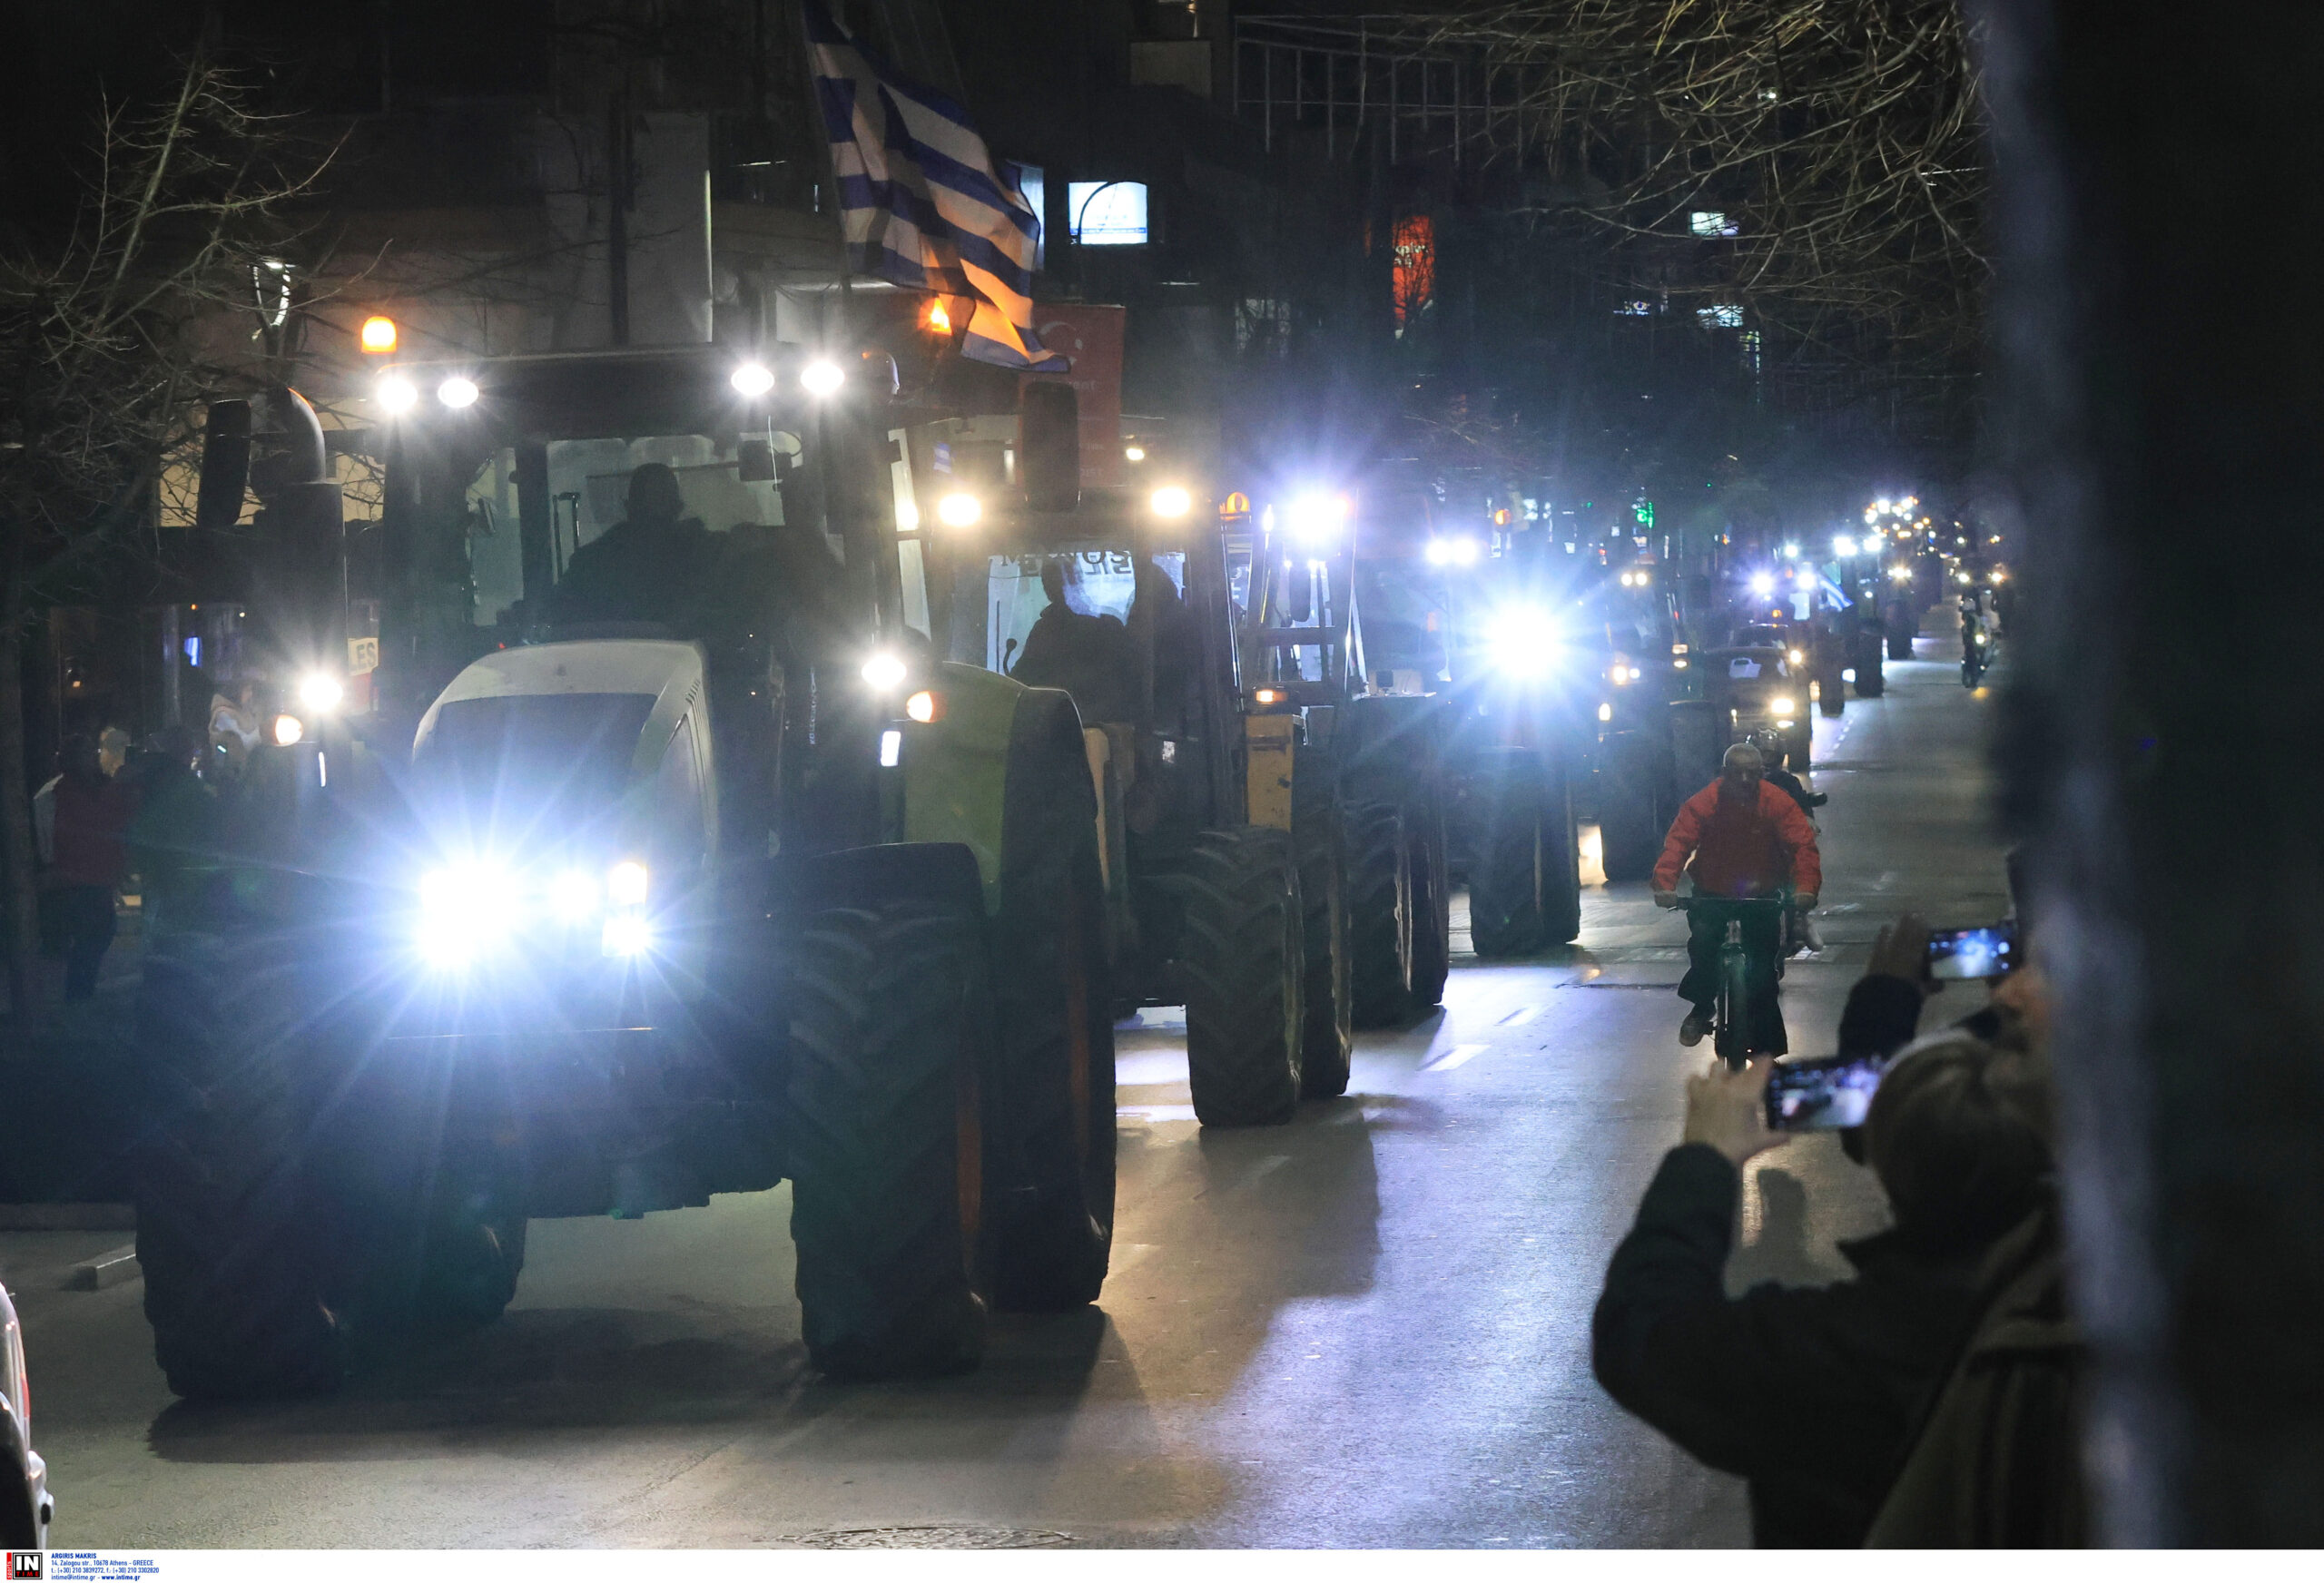 Τρακτέρ στο κέντρο της Λάρισας και της Καρδίτσας – Οι αγρότες θα διανυκτερεύσουν στις πλατείες